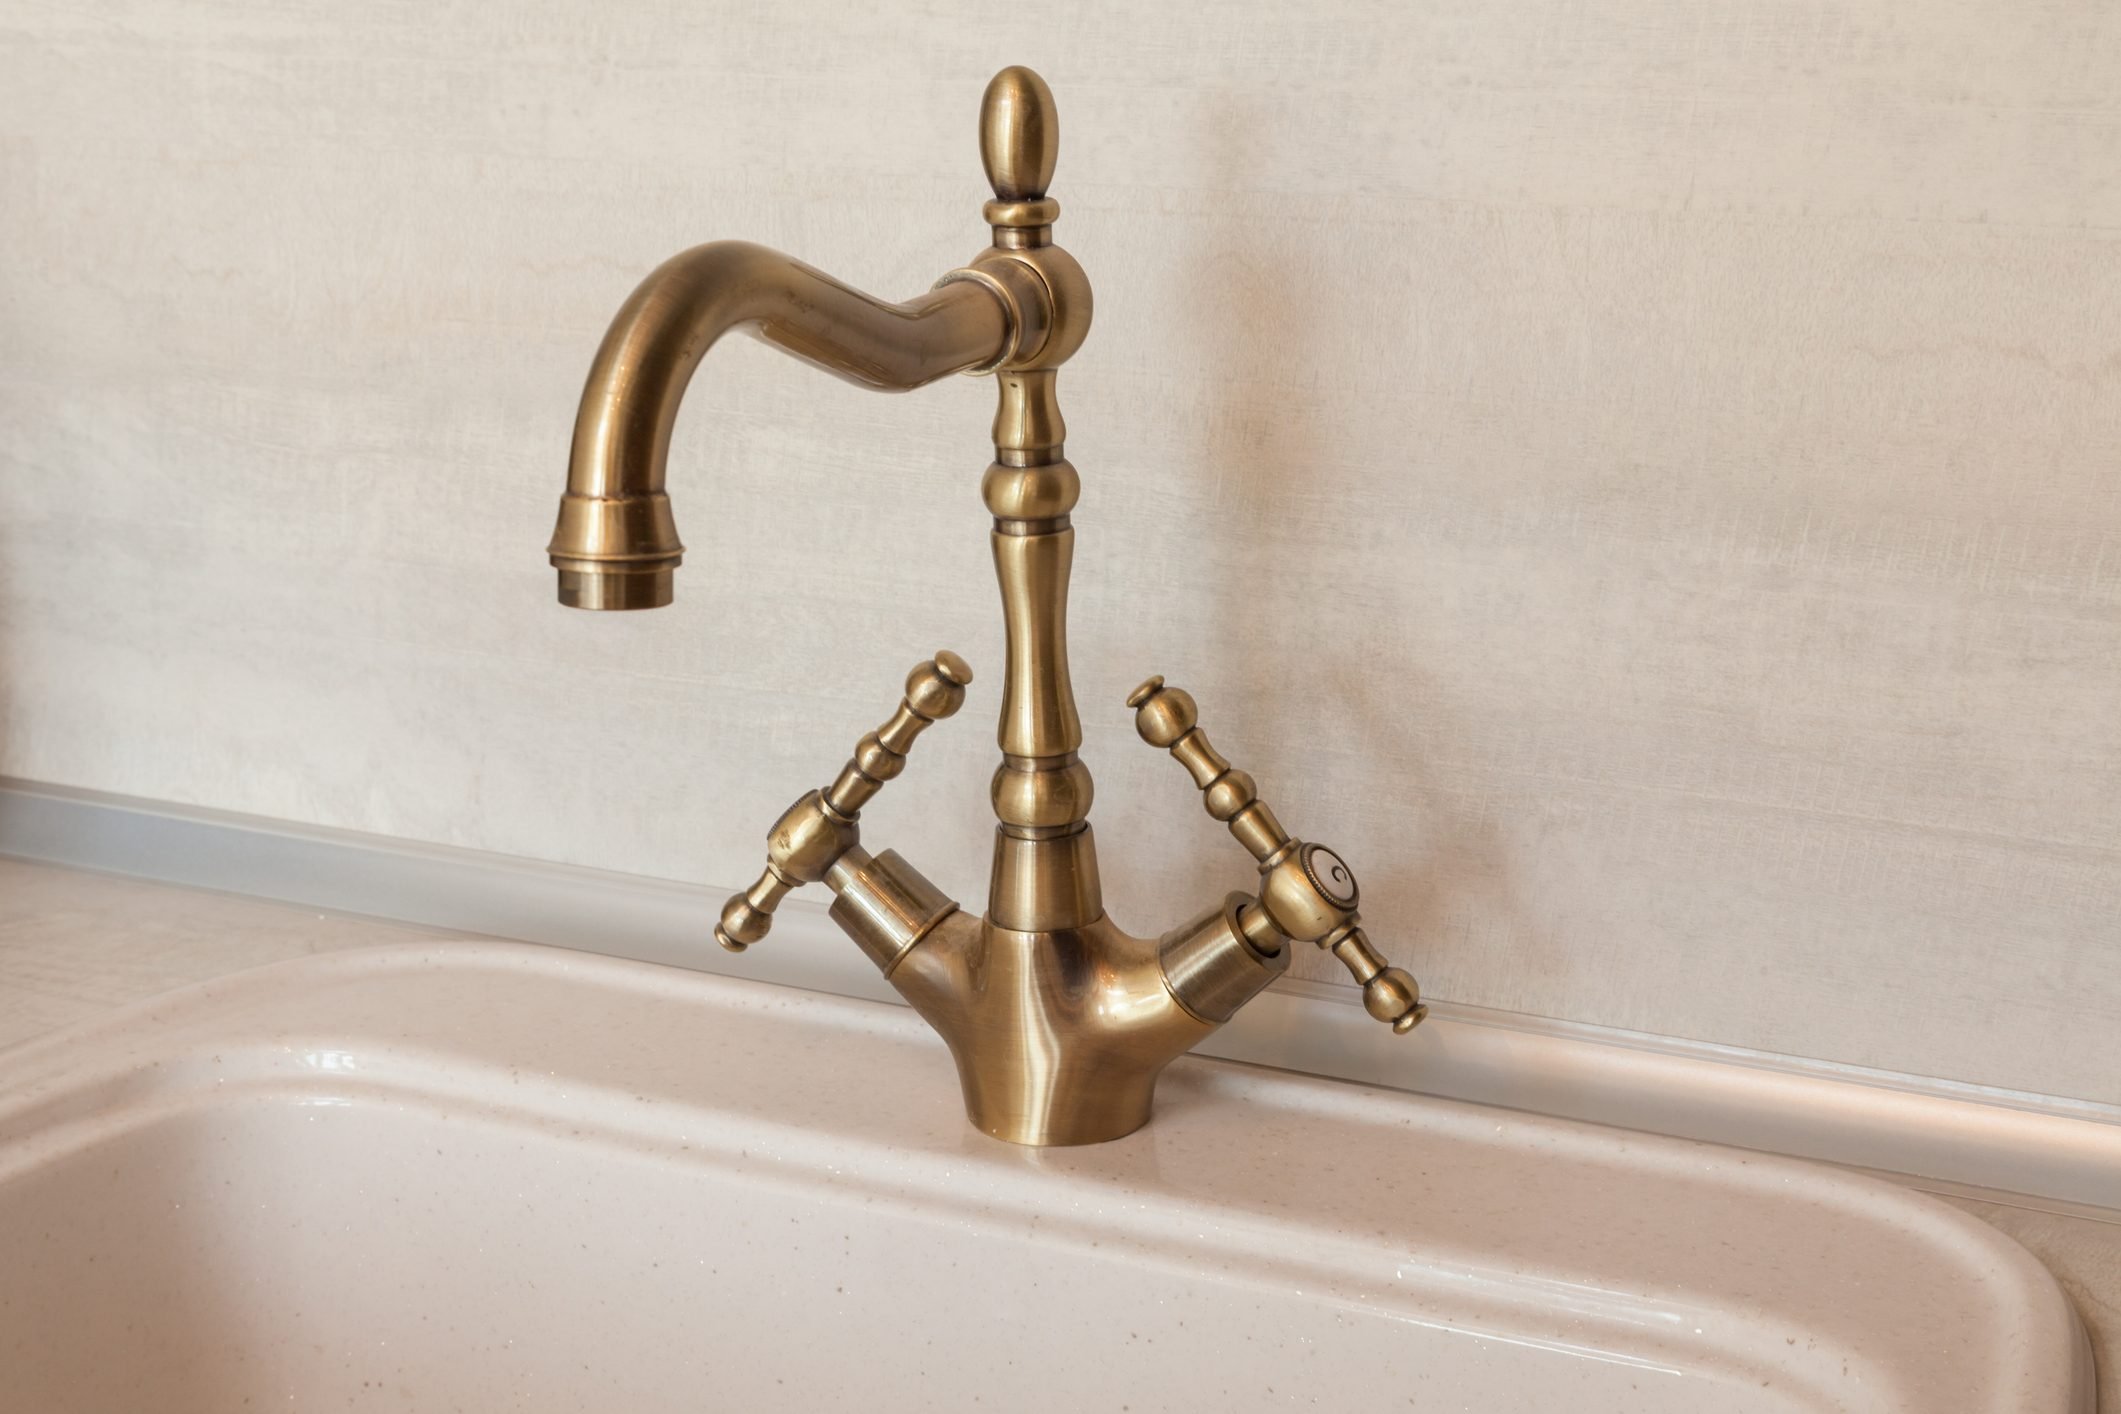 Vintage retro bronze water tap faucet